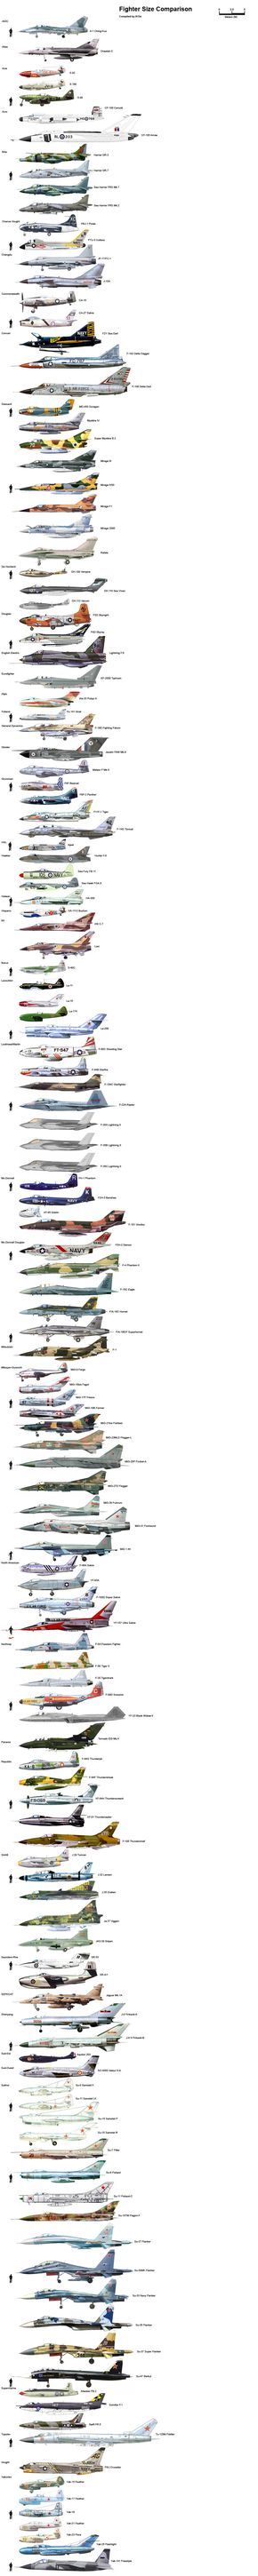 Comparatifs de la taille d'avions de chasse et d'hélicoptères